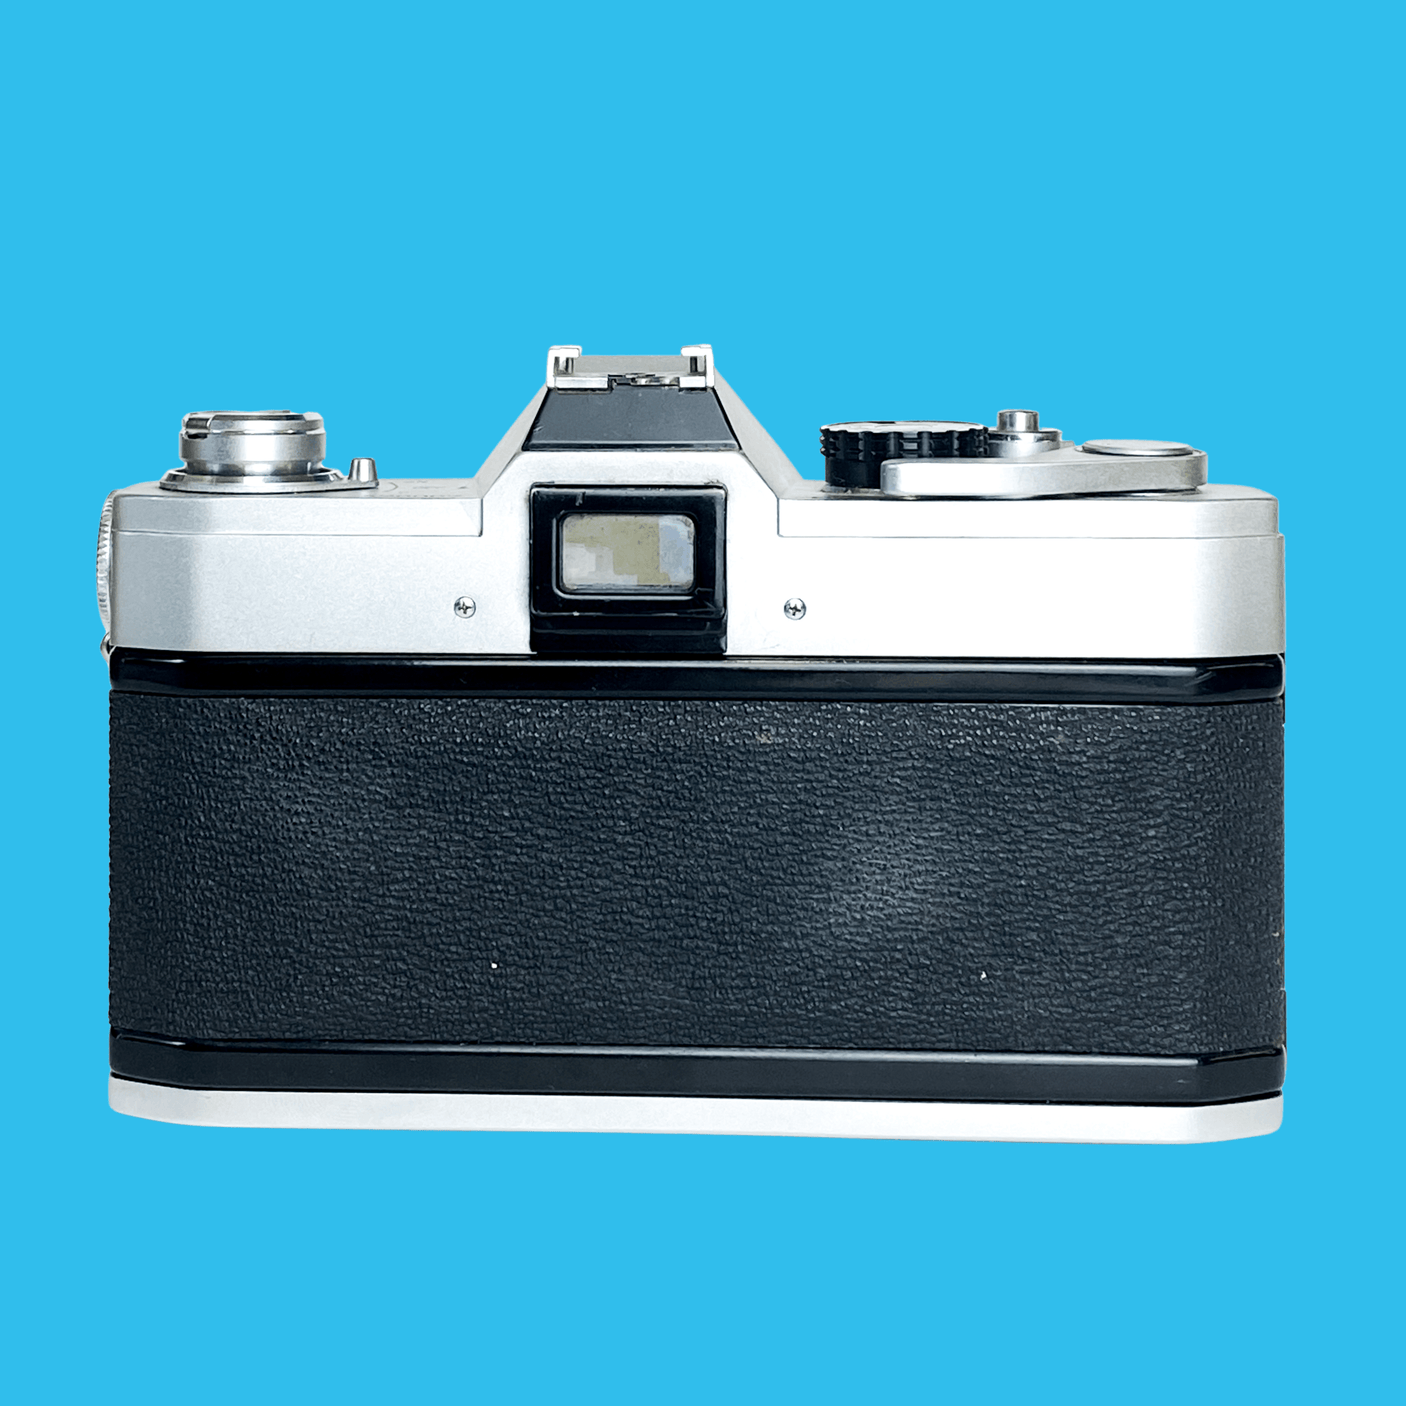 Canon FTb QL 35mm SLR Film Camera With Canon Sc 50mm F1.8.